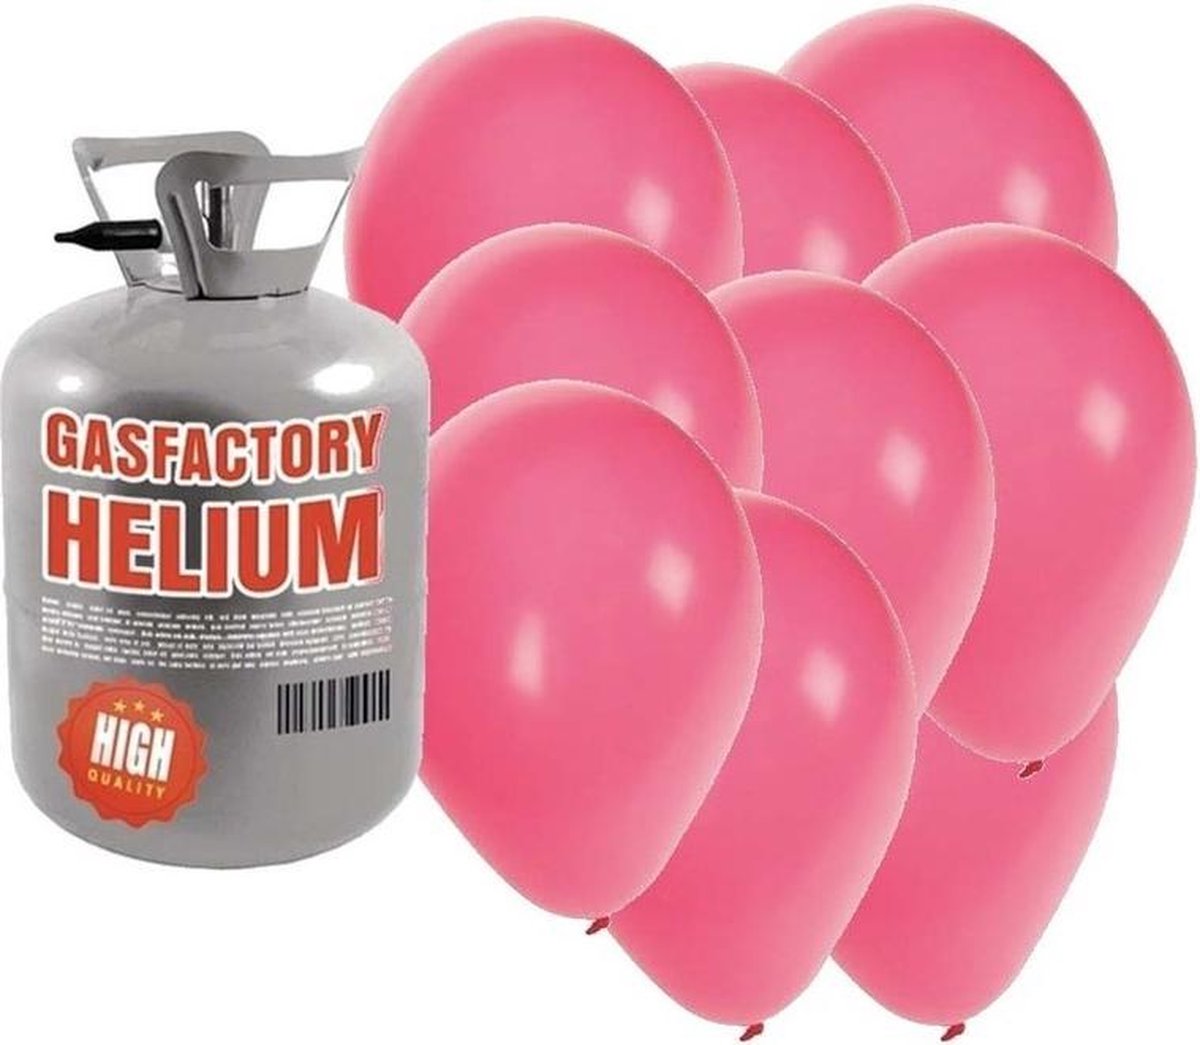 Helium tank met 30 roze ballonnen - Roze - Heliumgas met ballonnen voor een thema feest - Shoppartners